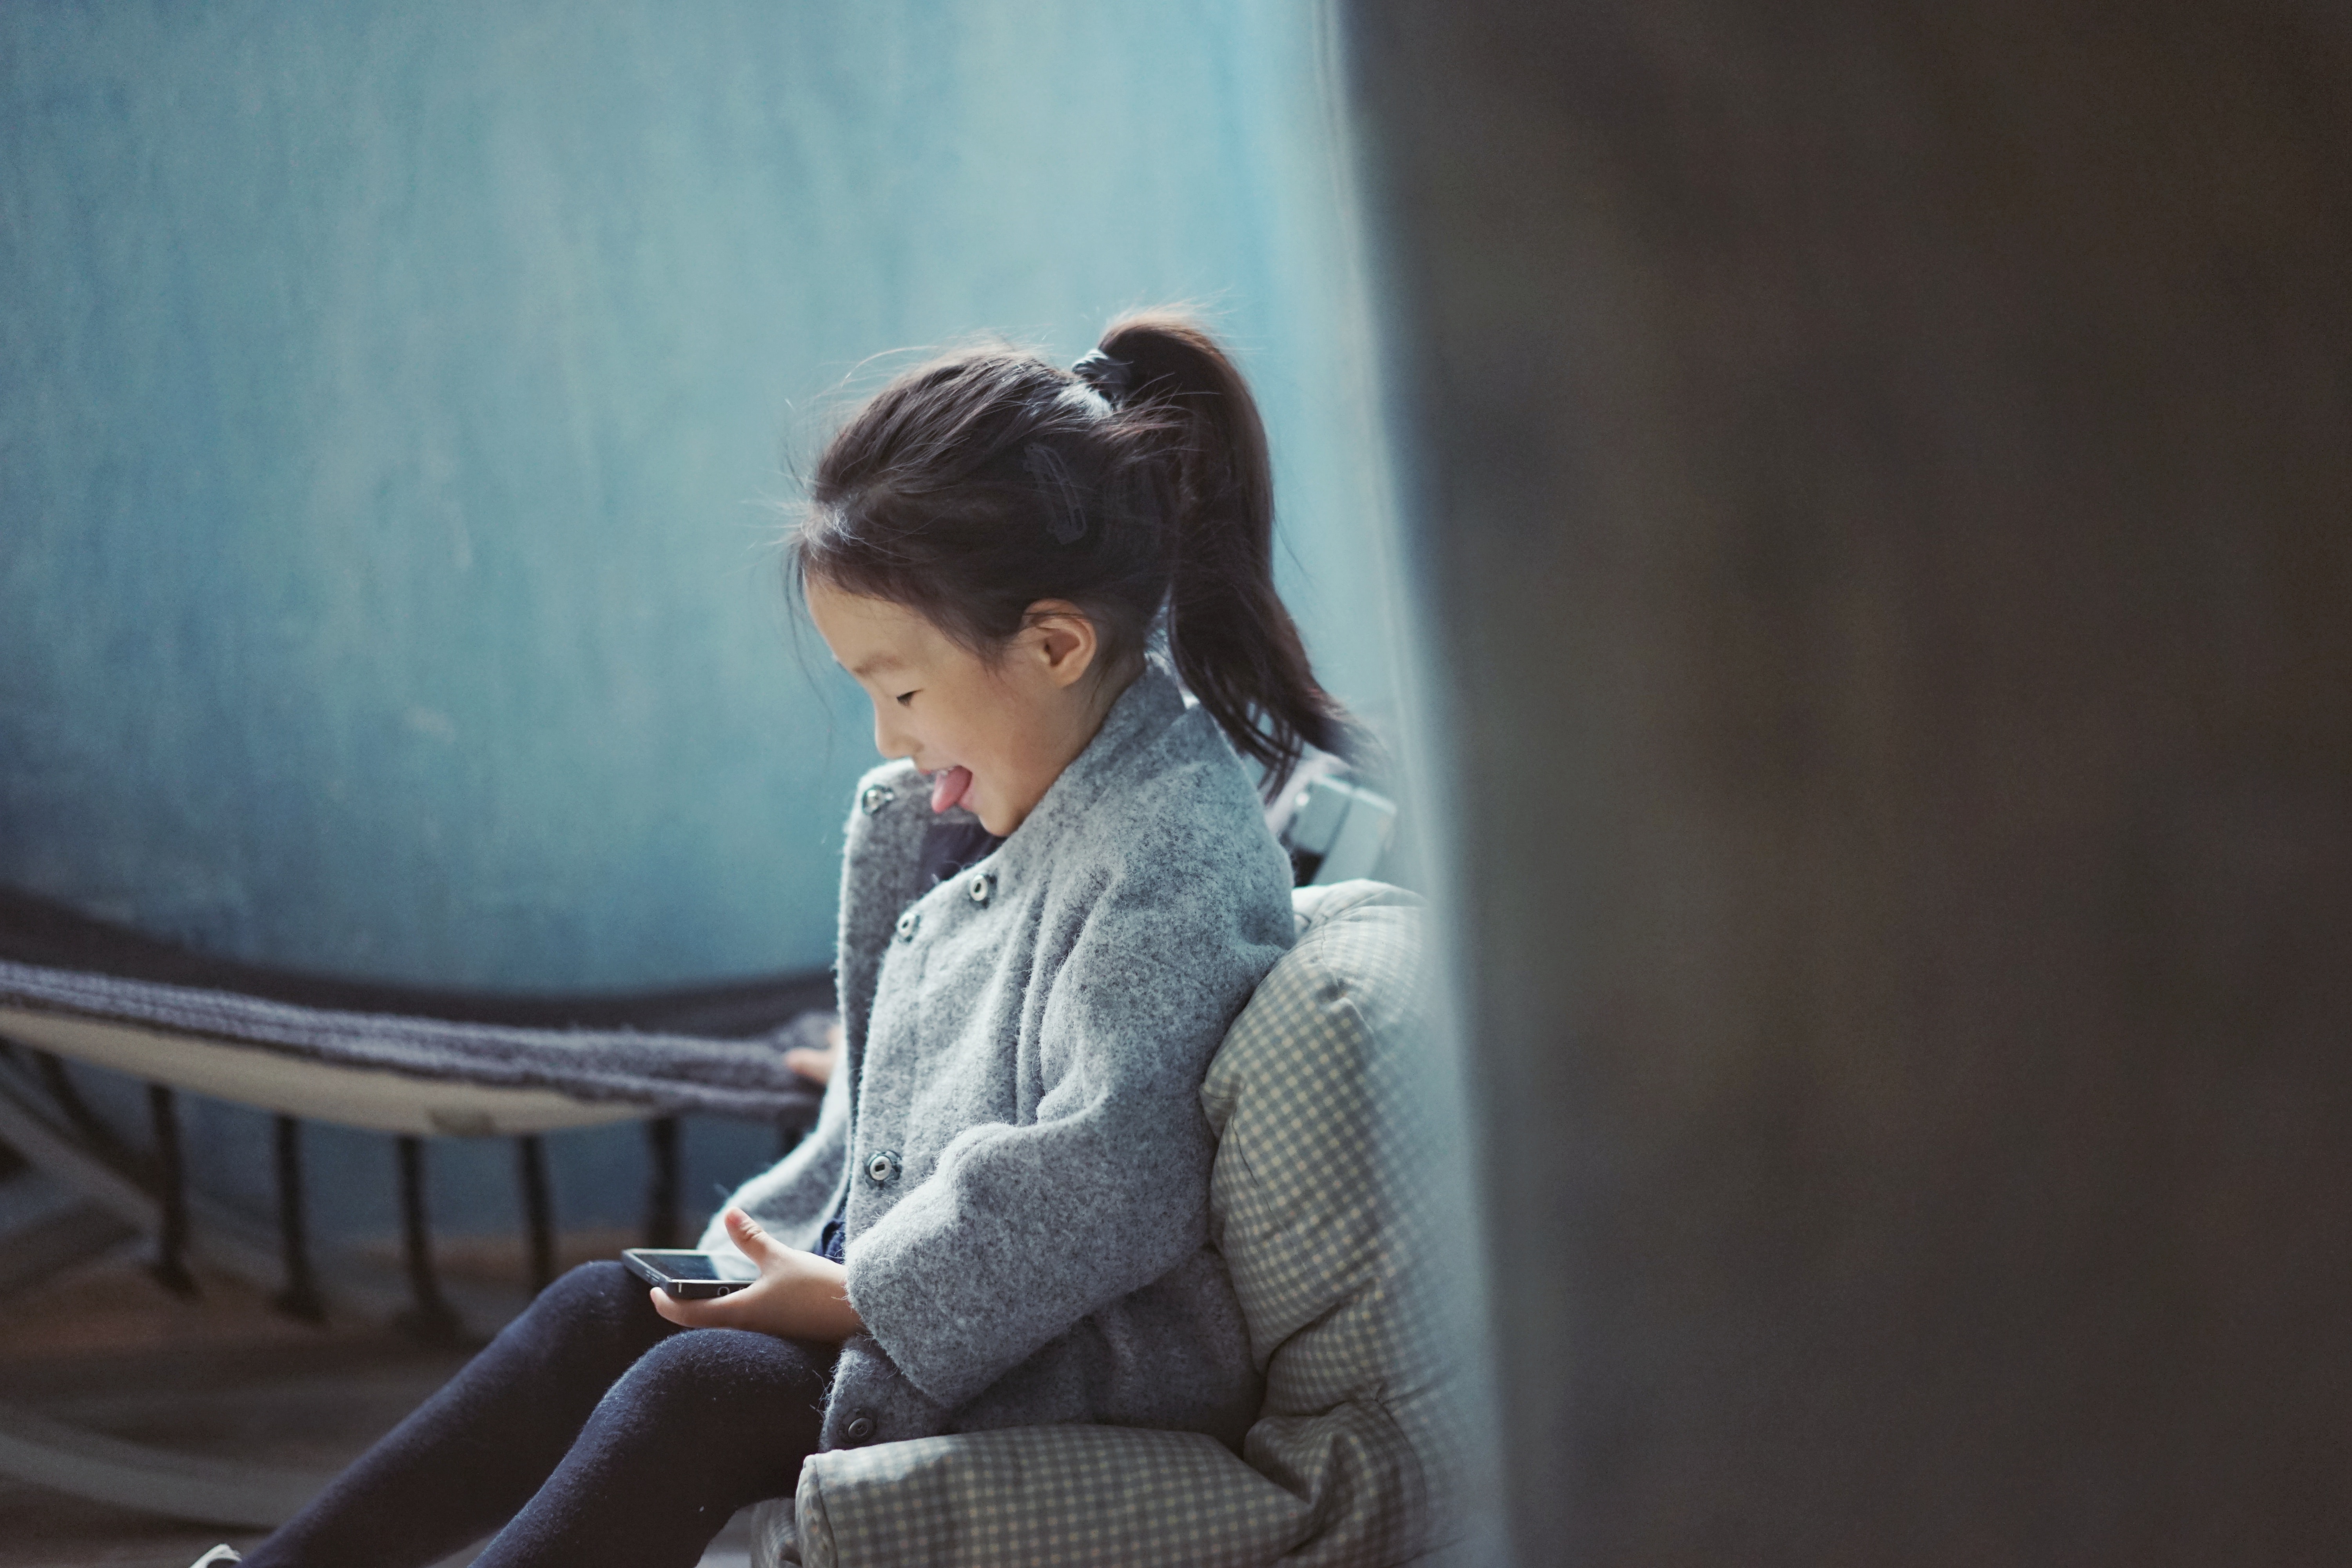 La Chine veut limiter le temps de smartphone des enfants. Et si c'était la solution ?